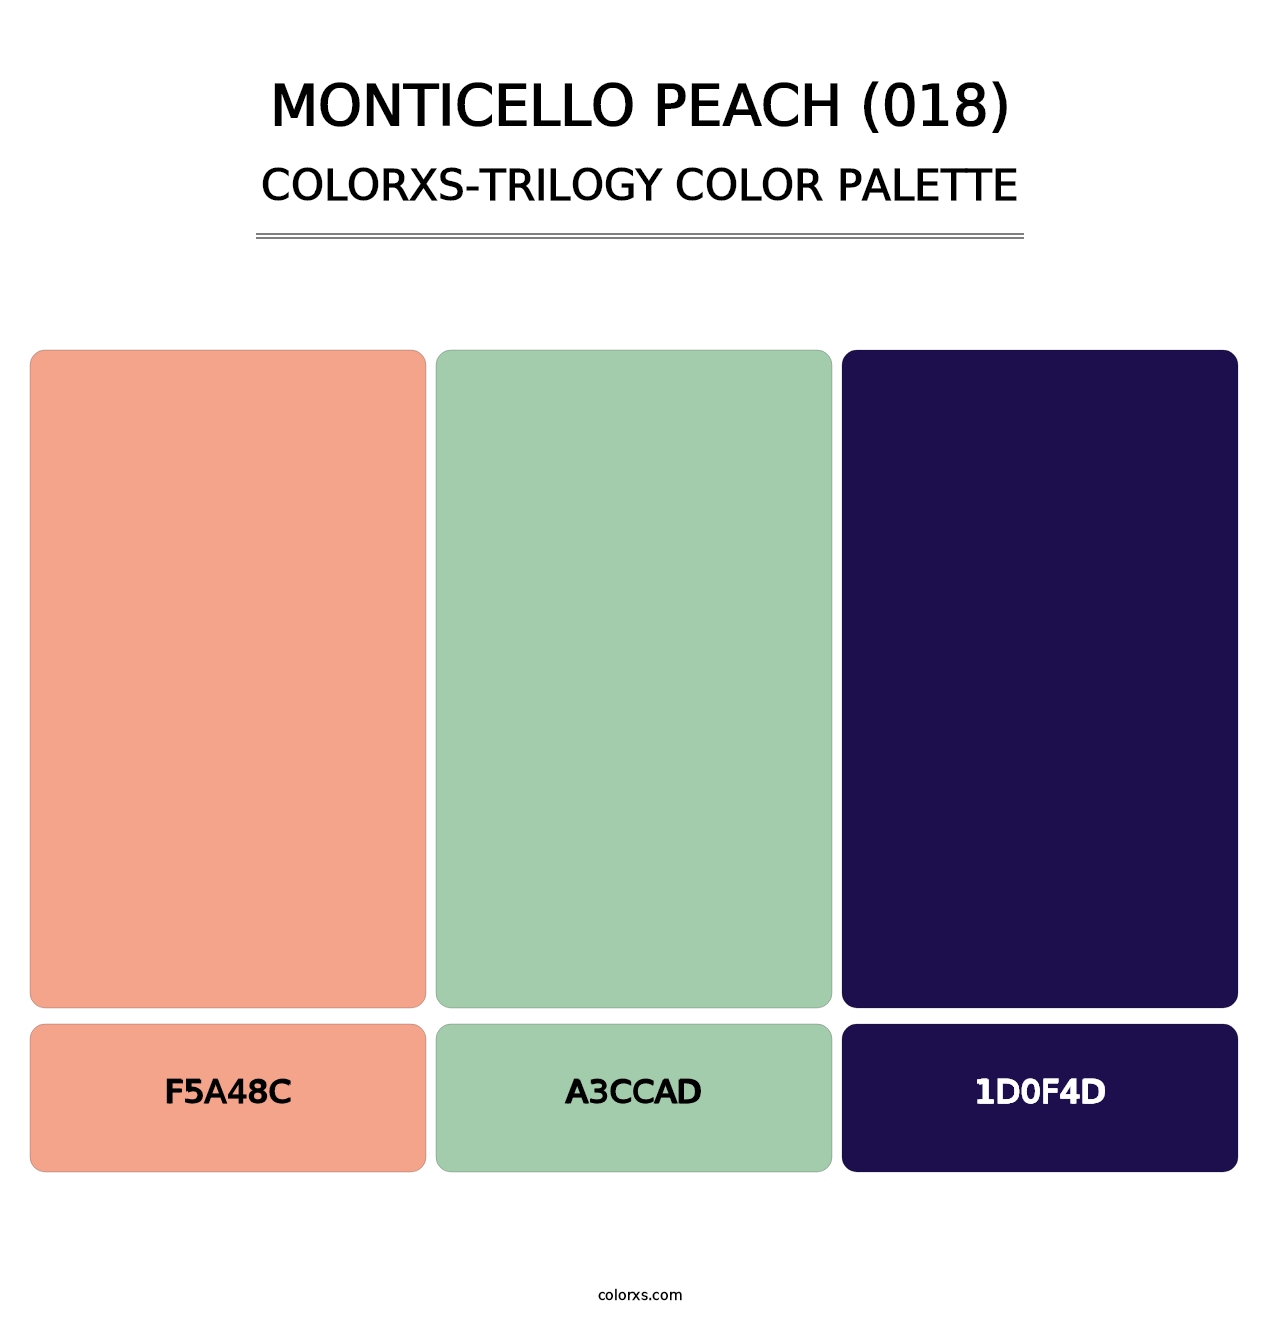 Monticello Peach (018) - Colorxs Trilogy Palette